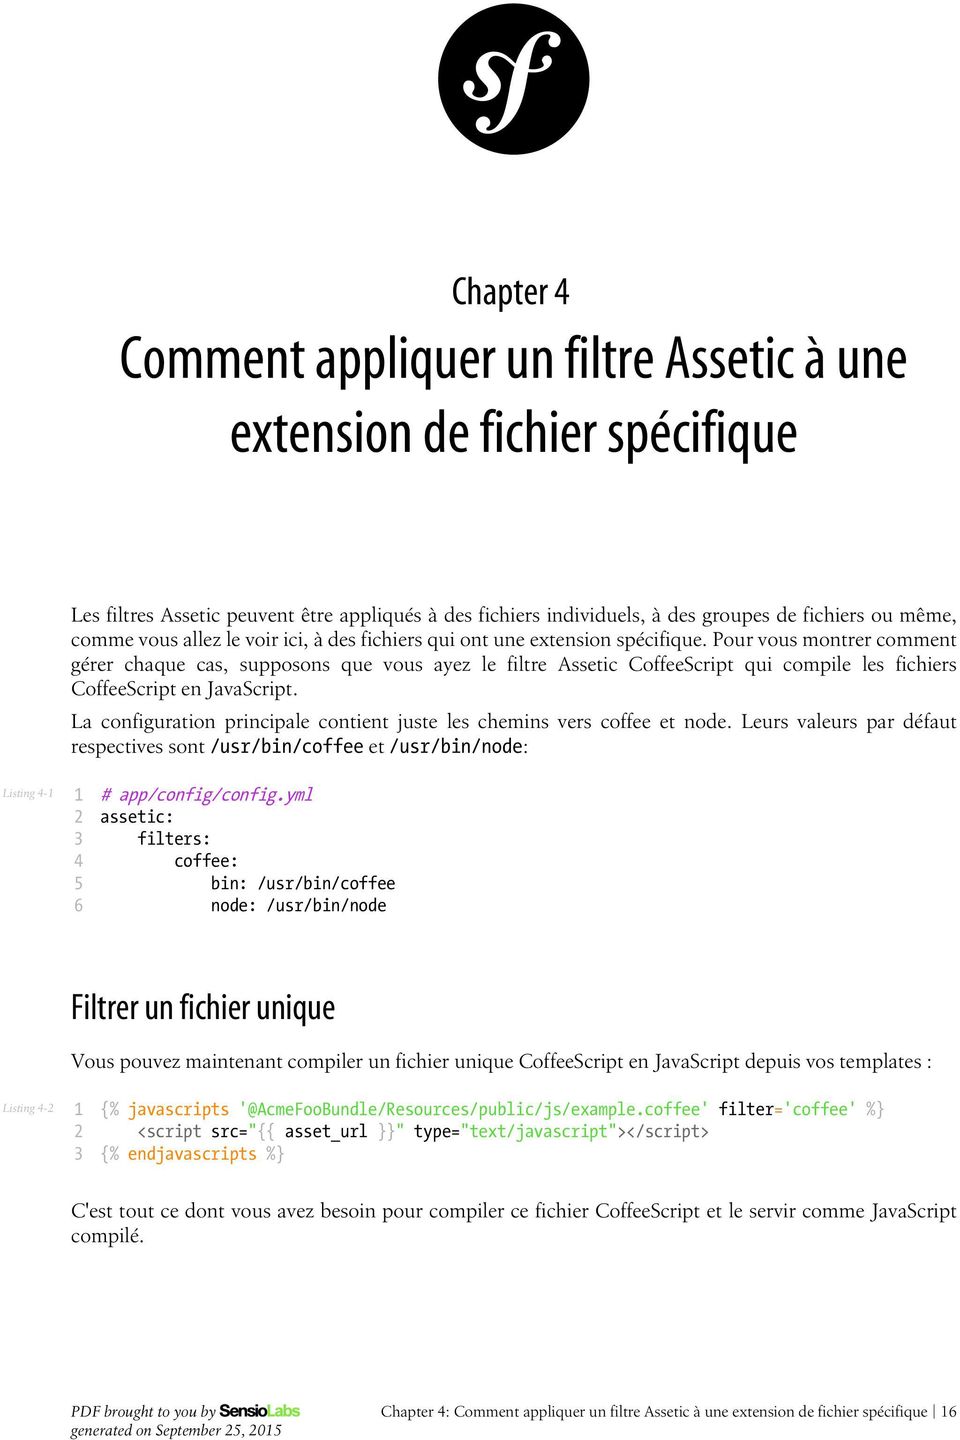 Pour vous montrer comment gérer chaque cas, supposons que vous ayez le filtre Assetic CoffeeScript qui compile les fichiers CoffeeScript en JavaScript.